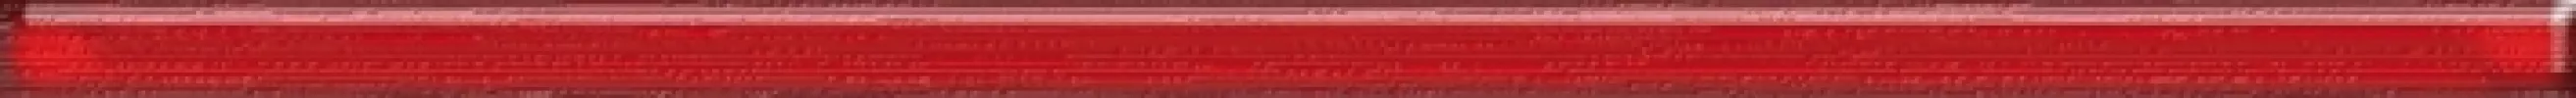 Плитка настенная Cerrol 60x2 бордюр czerwona listwa szklana Fibra глянцевая глазурованная